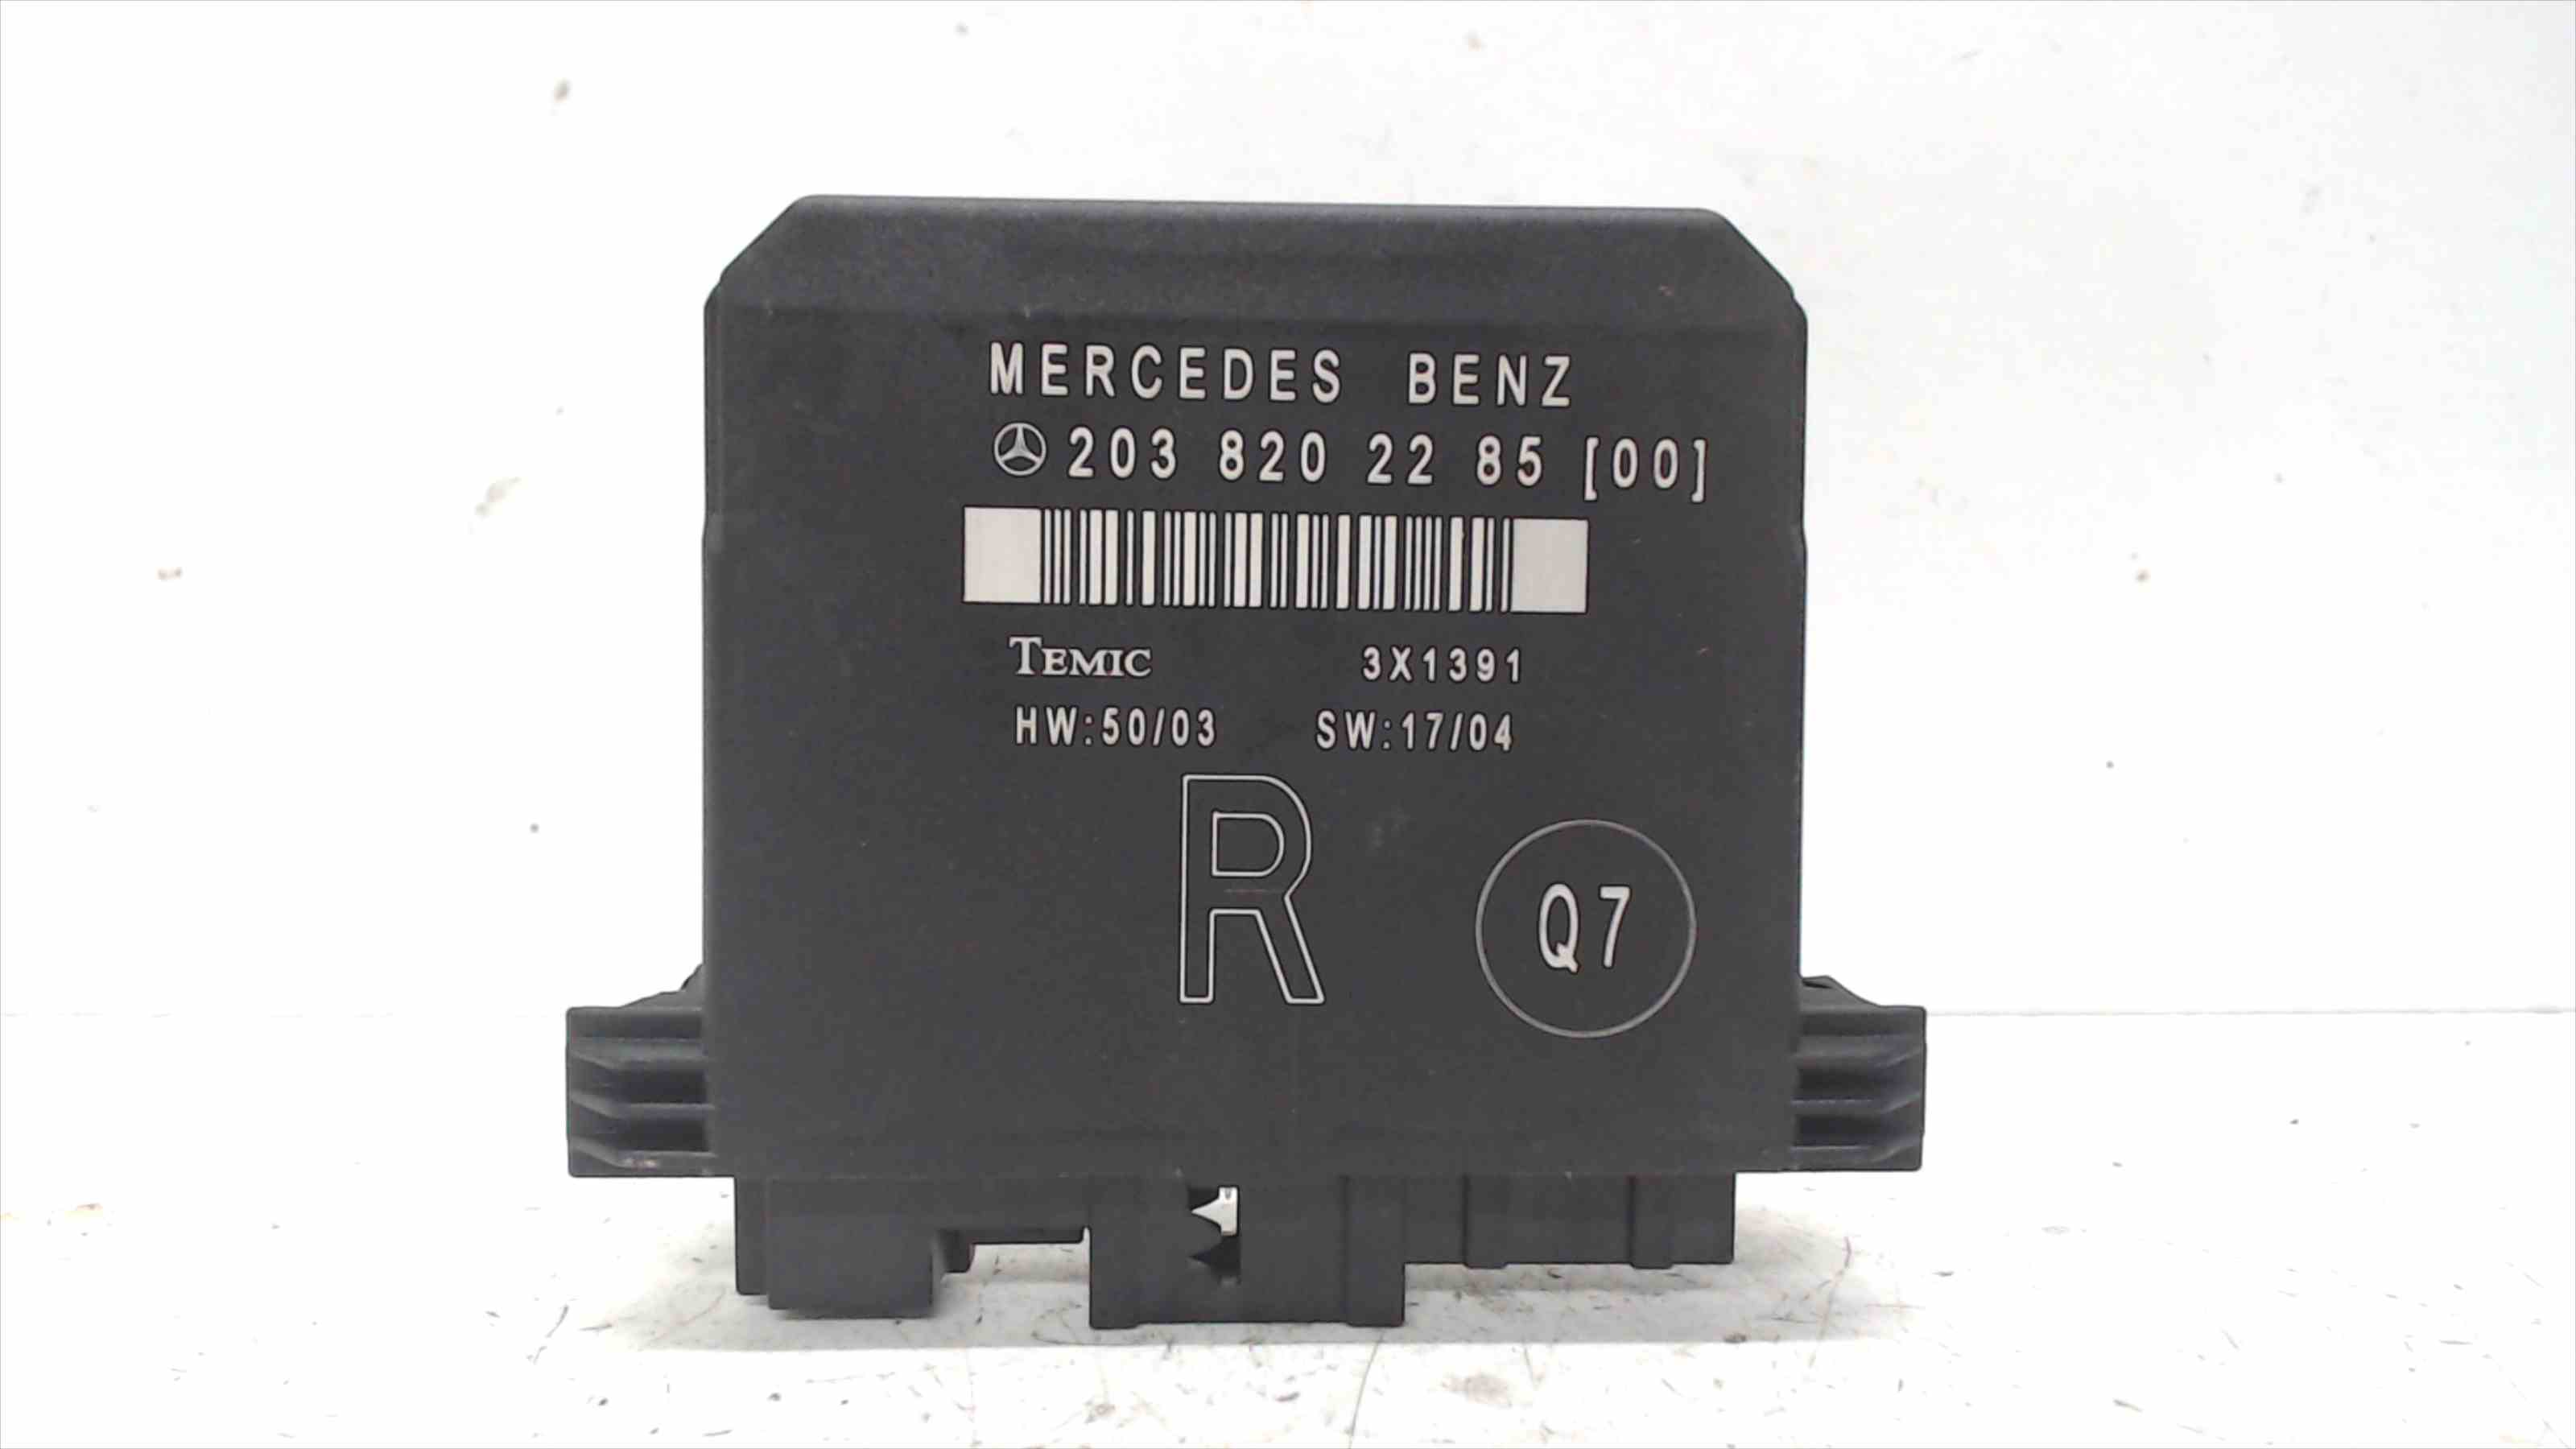 MERCEDES-BENZ C-Class W203/S203/CL203 (2000-2008) Другие блоки управления 2038202285 24691971